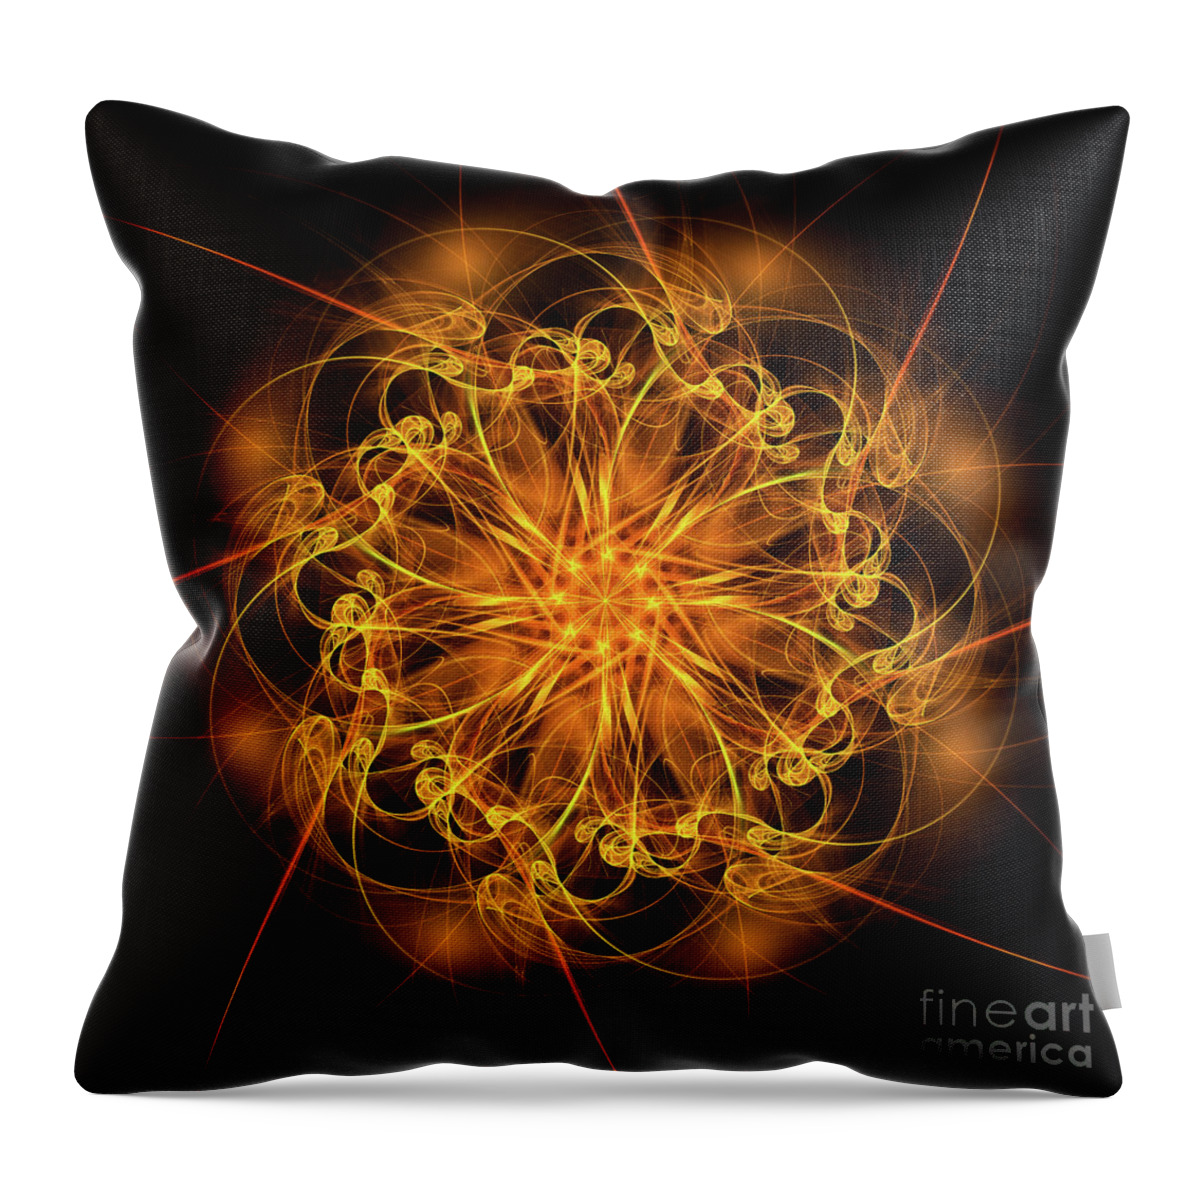 Fractal Star Throw Pillow featuring the digital art Fractal Fire Star by Ann Garrett